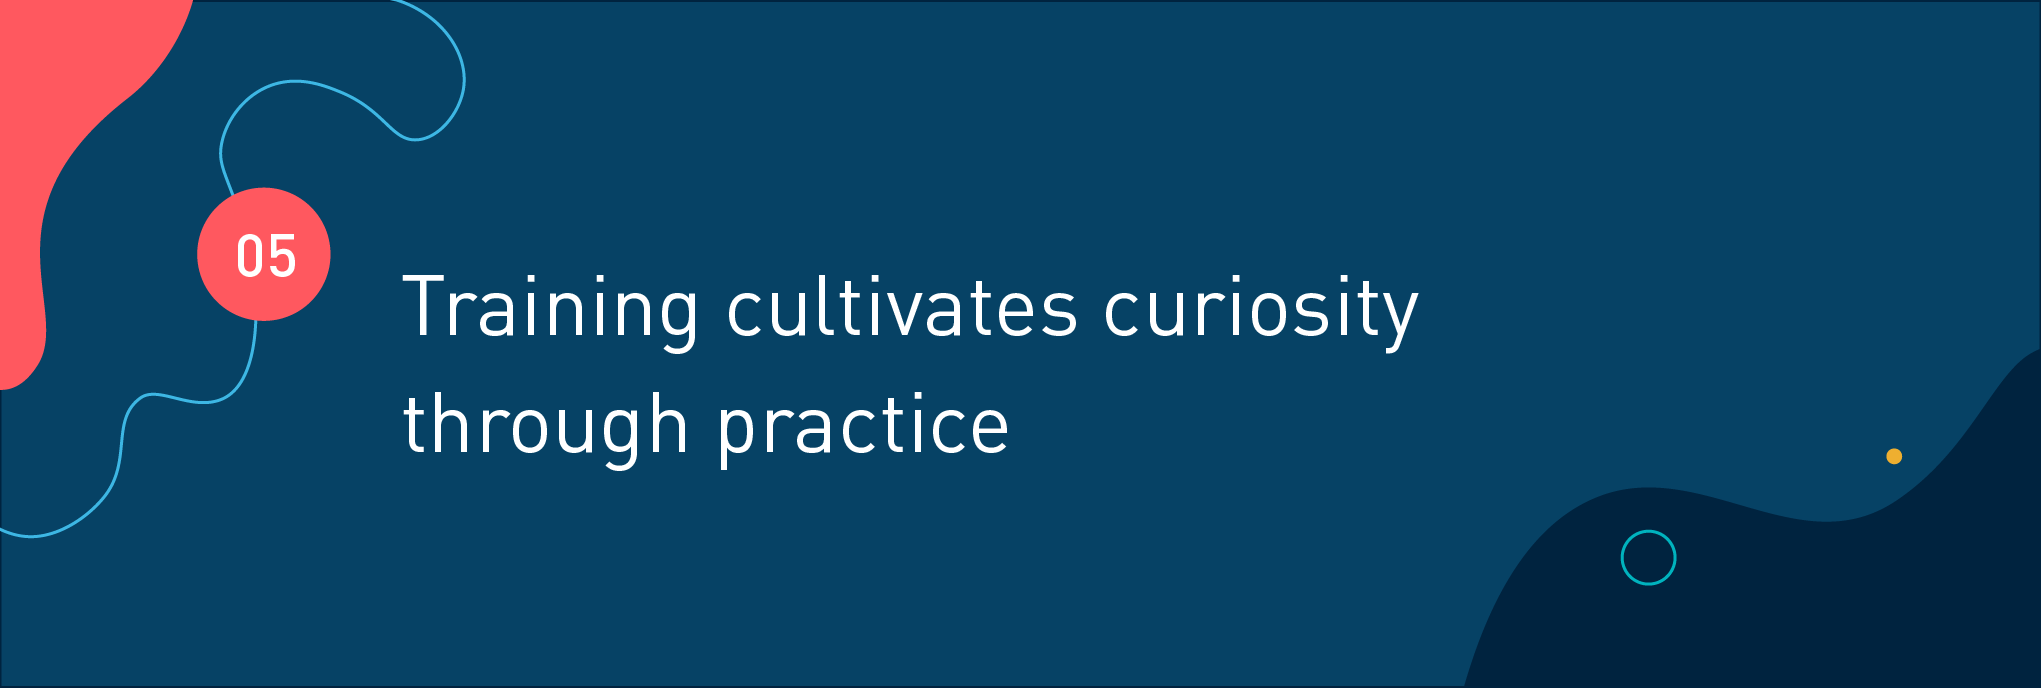 Training cultivates curiosity through practice